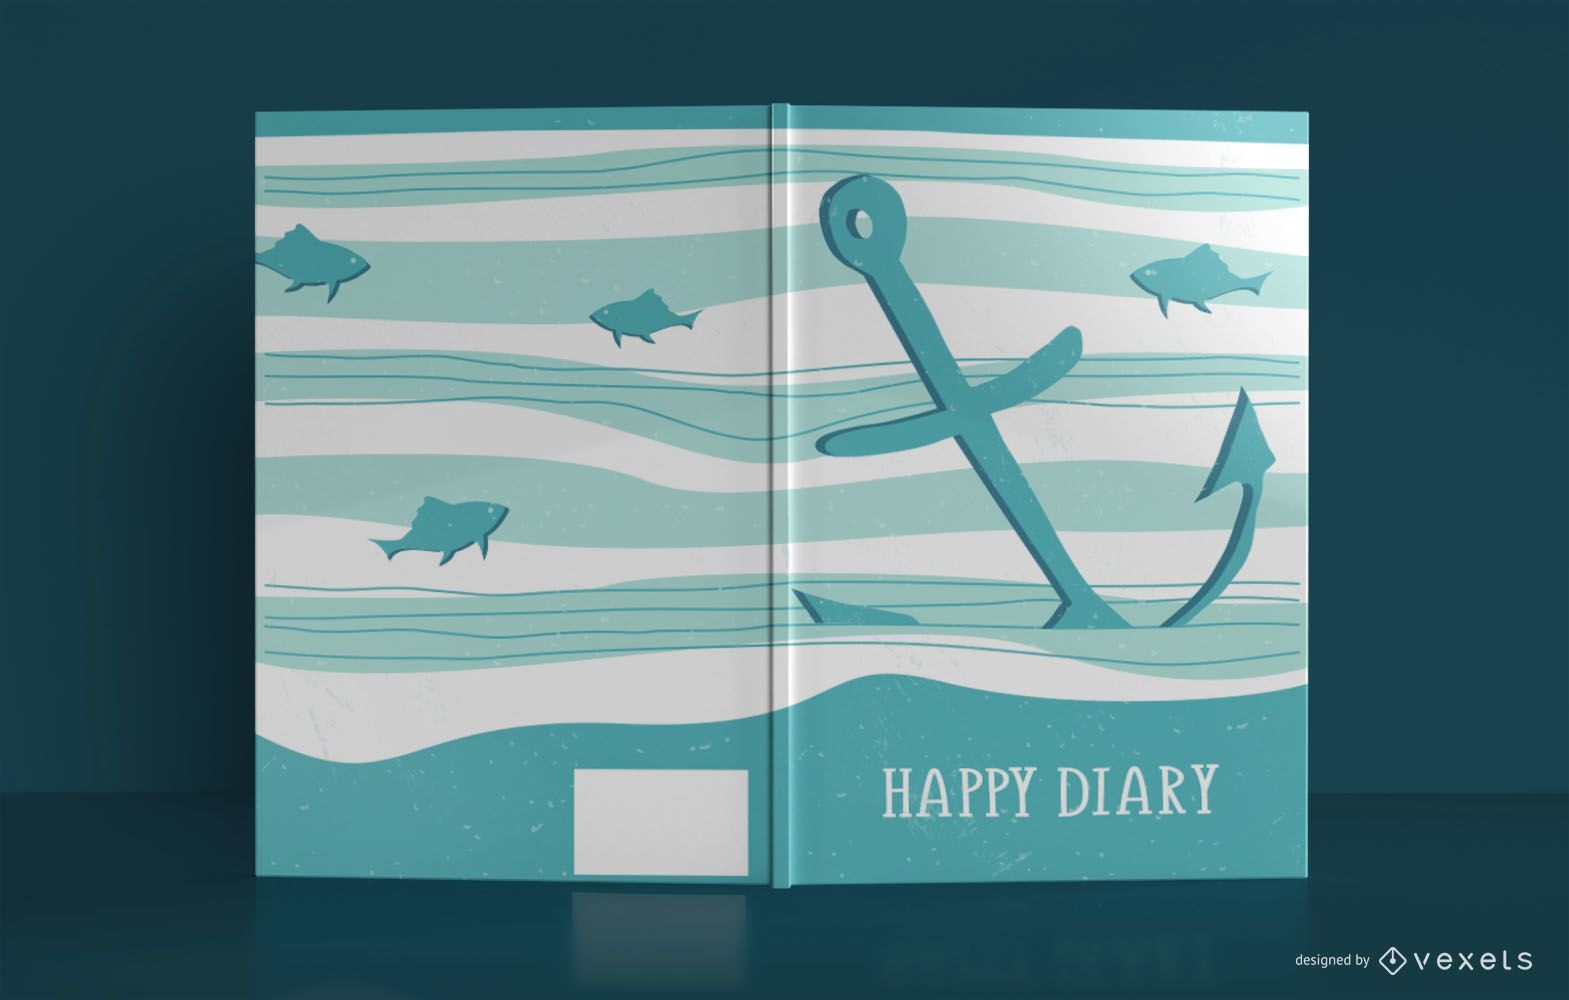 Dise?o de portada de libro Happy Diary Sea